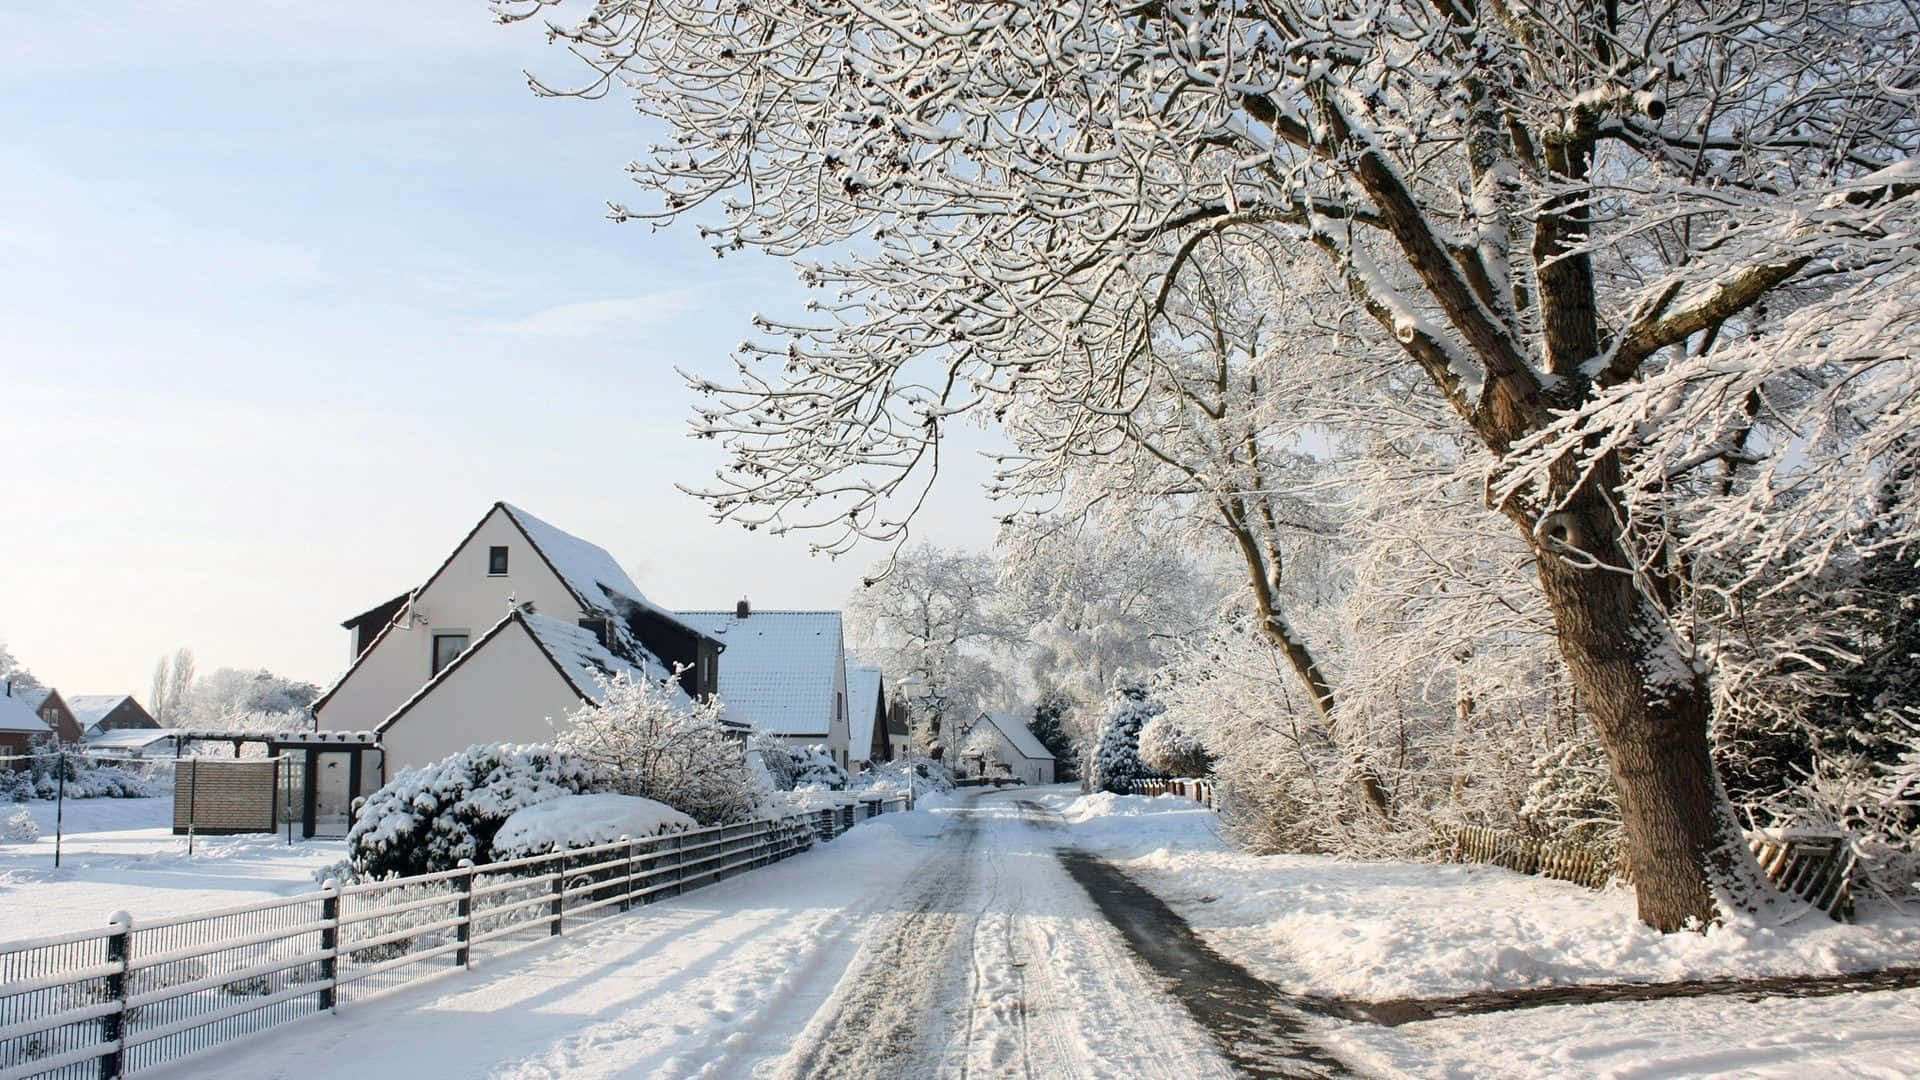 Snowy Village in Winter Wonderland Wallpaper